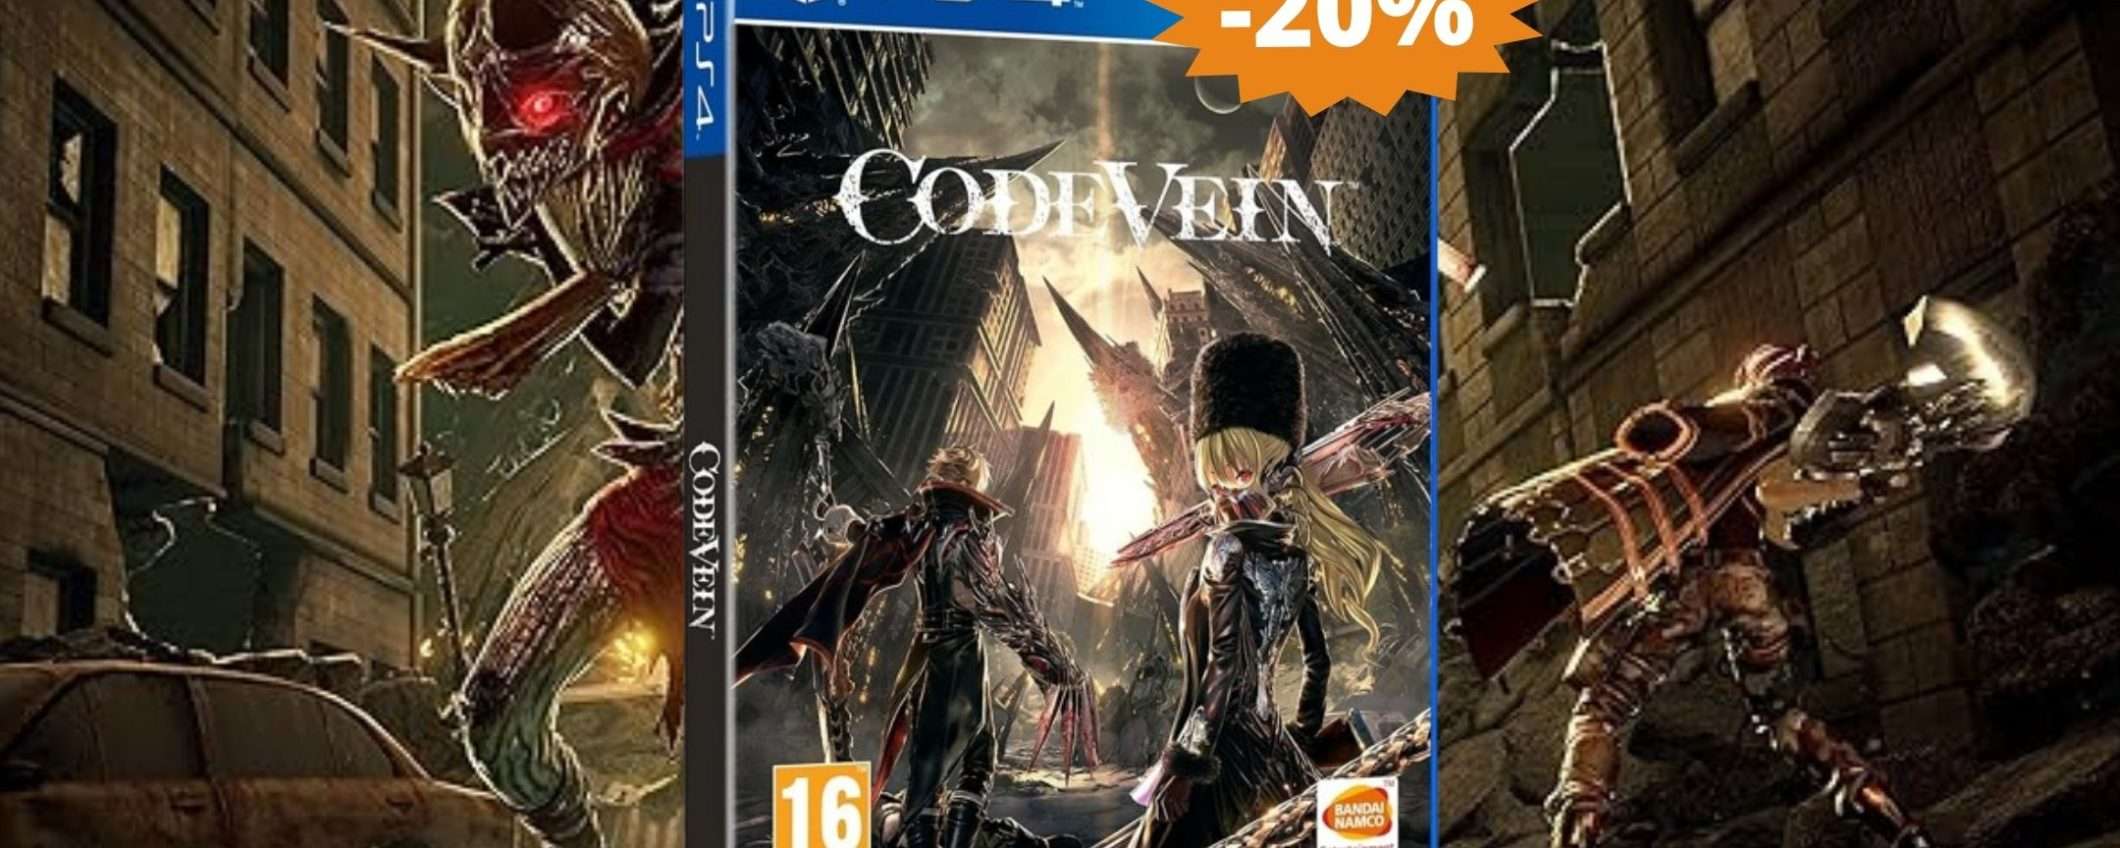 Code Vein per PS4: avventura EPICA in SUPER sconto del 20%